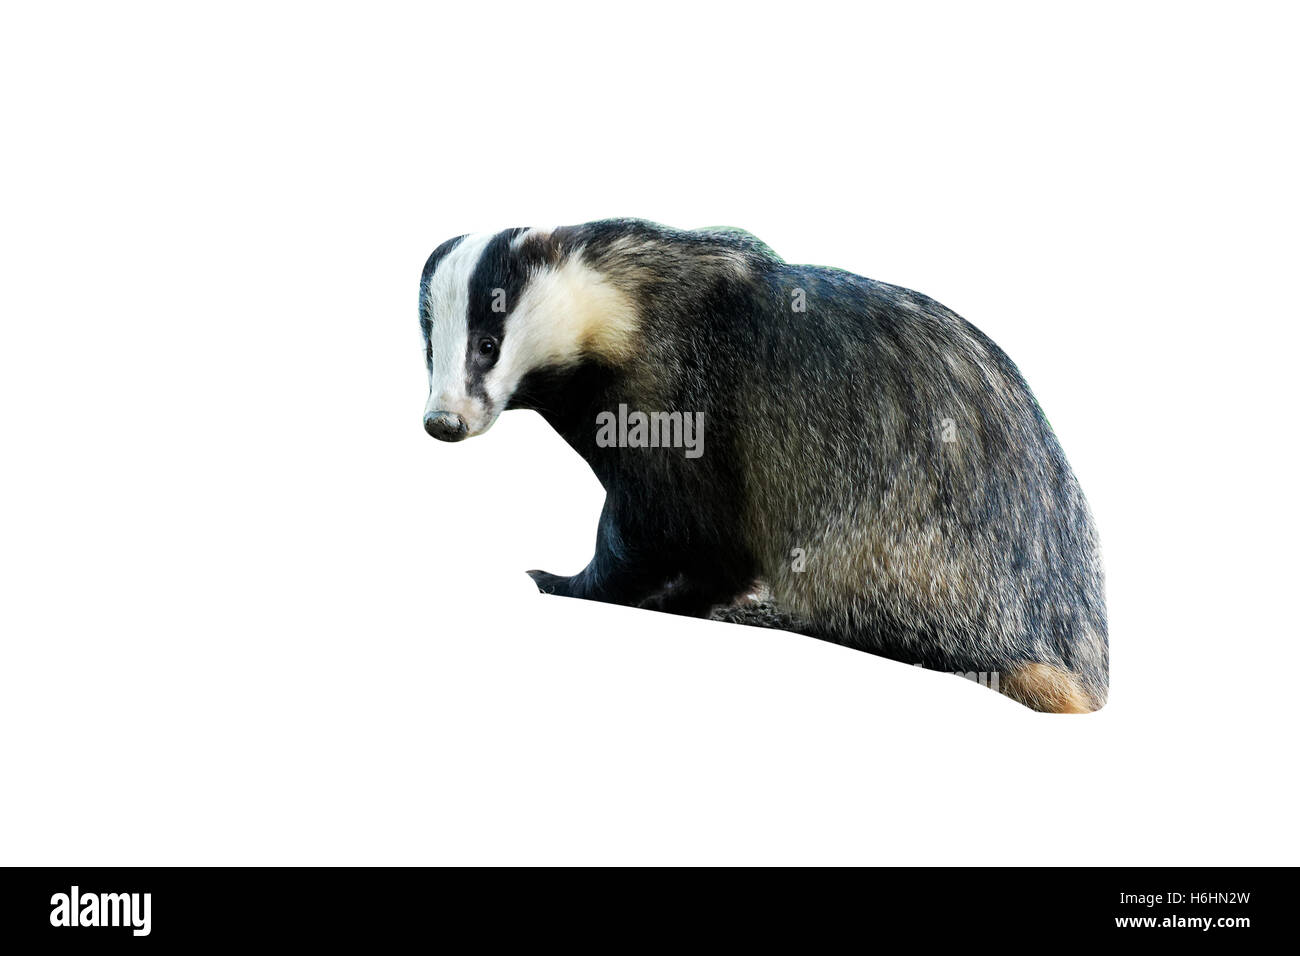 Badger, Meles meles, single mammal at dusk, Wales, May 2011 Stock Photo